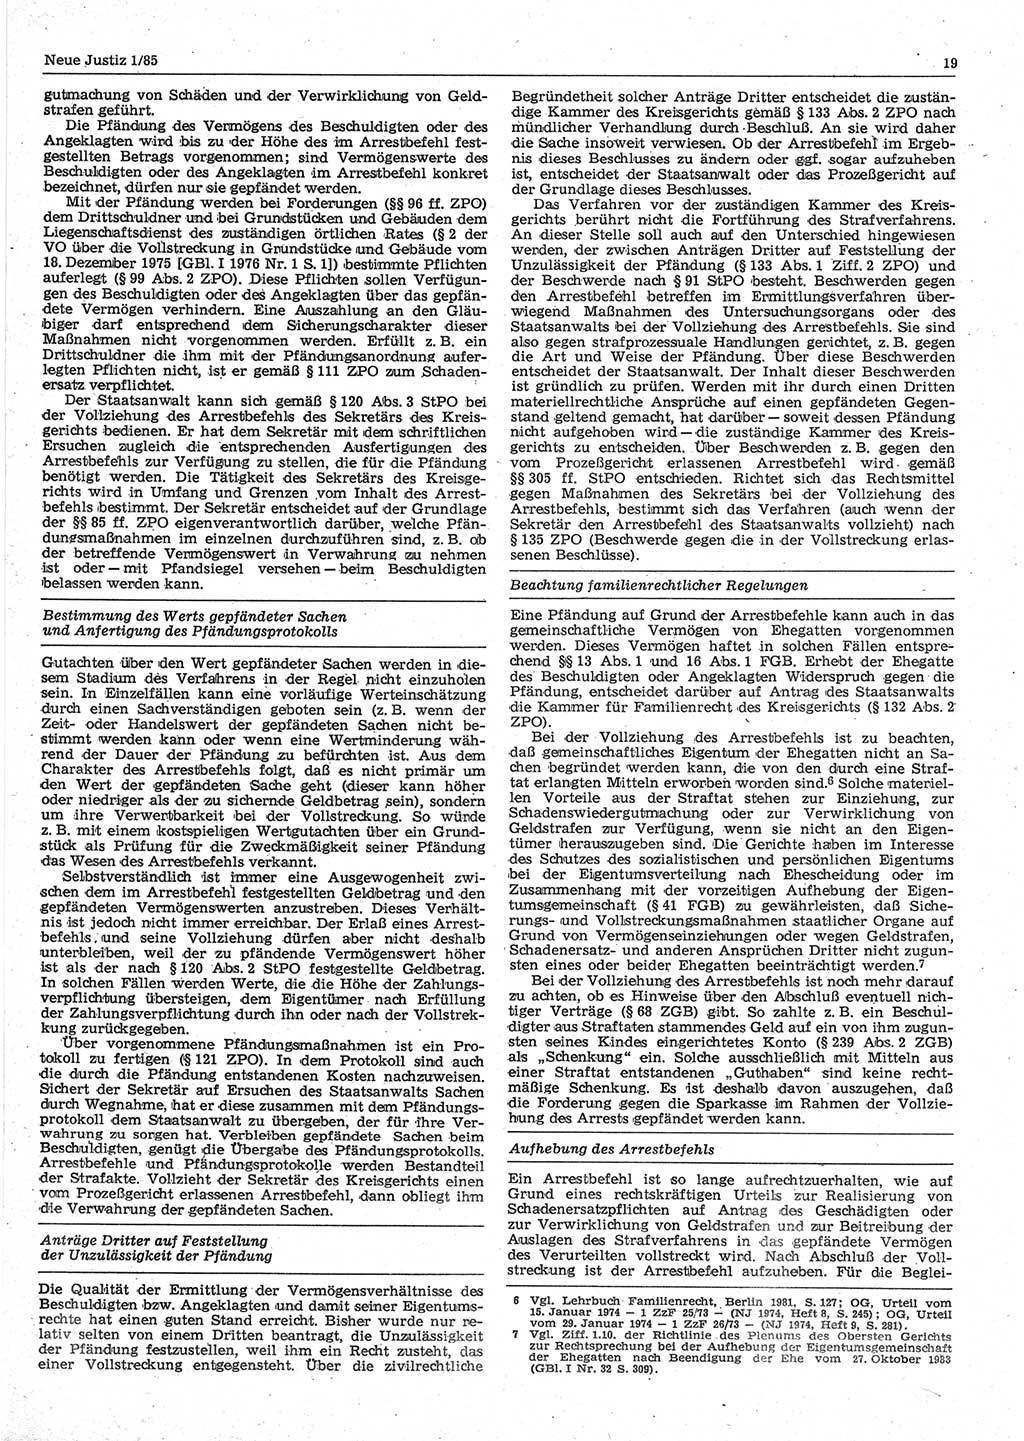 Neue Justiz (NJ), Zeitschrift für sozialistisches Recht und Gesetzlichkeit [Deutsche Demokratische Republik (DDR)], 39. Jahrgang 1985, Seite 19 (NJ DDR 1985, S. 19)